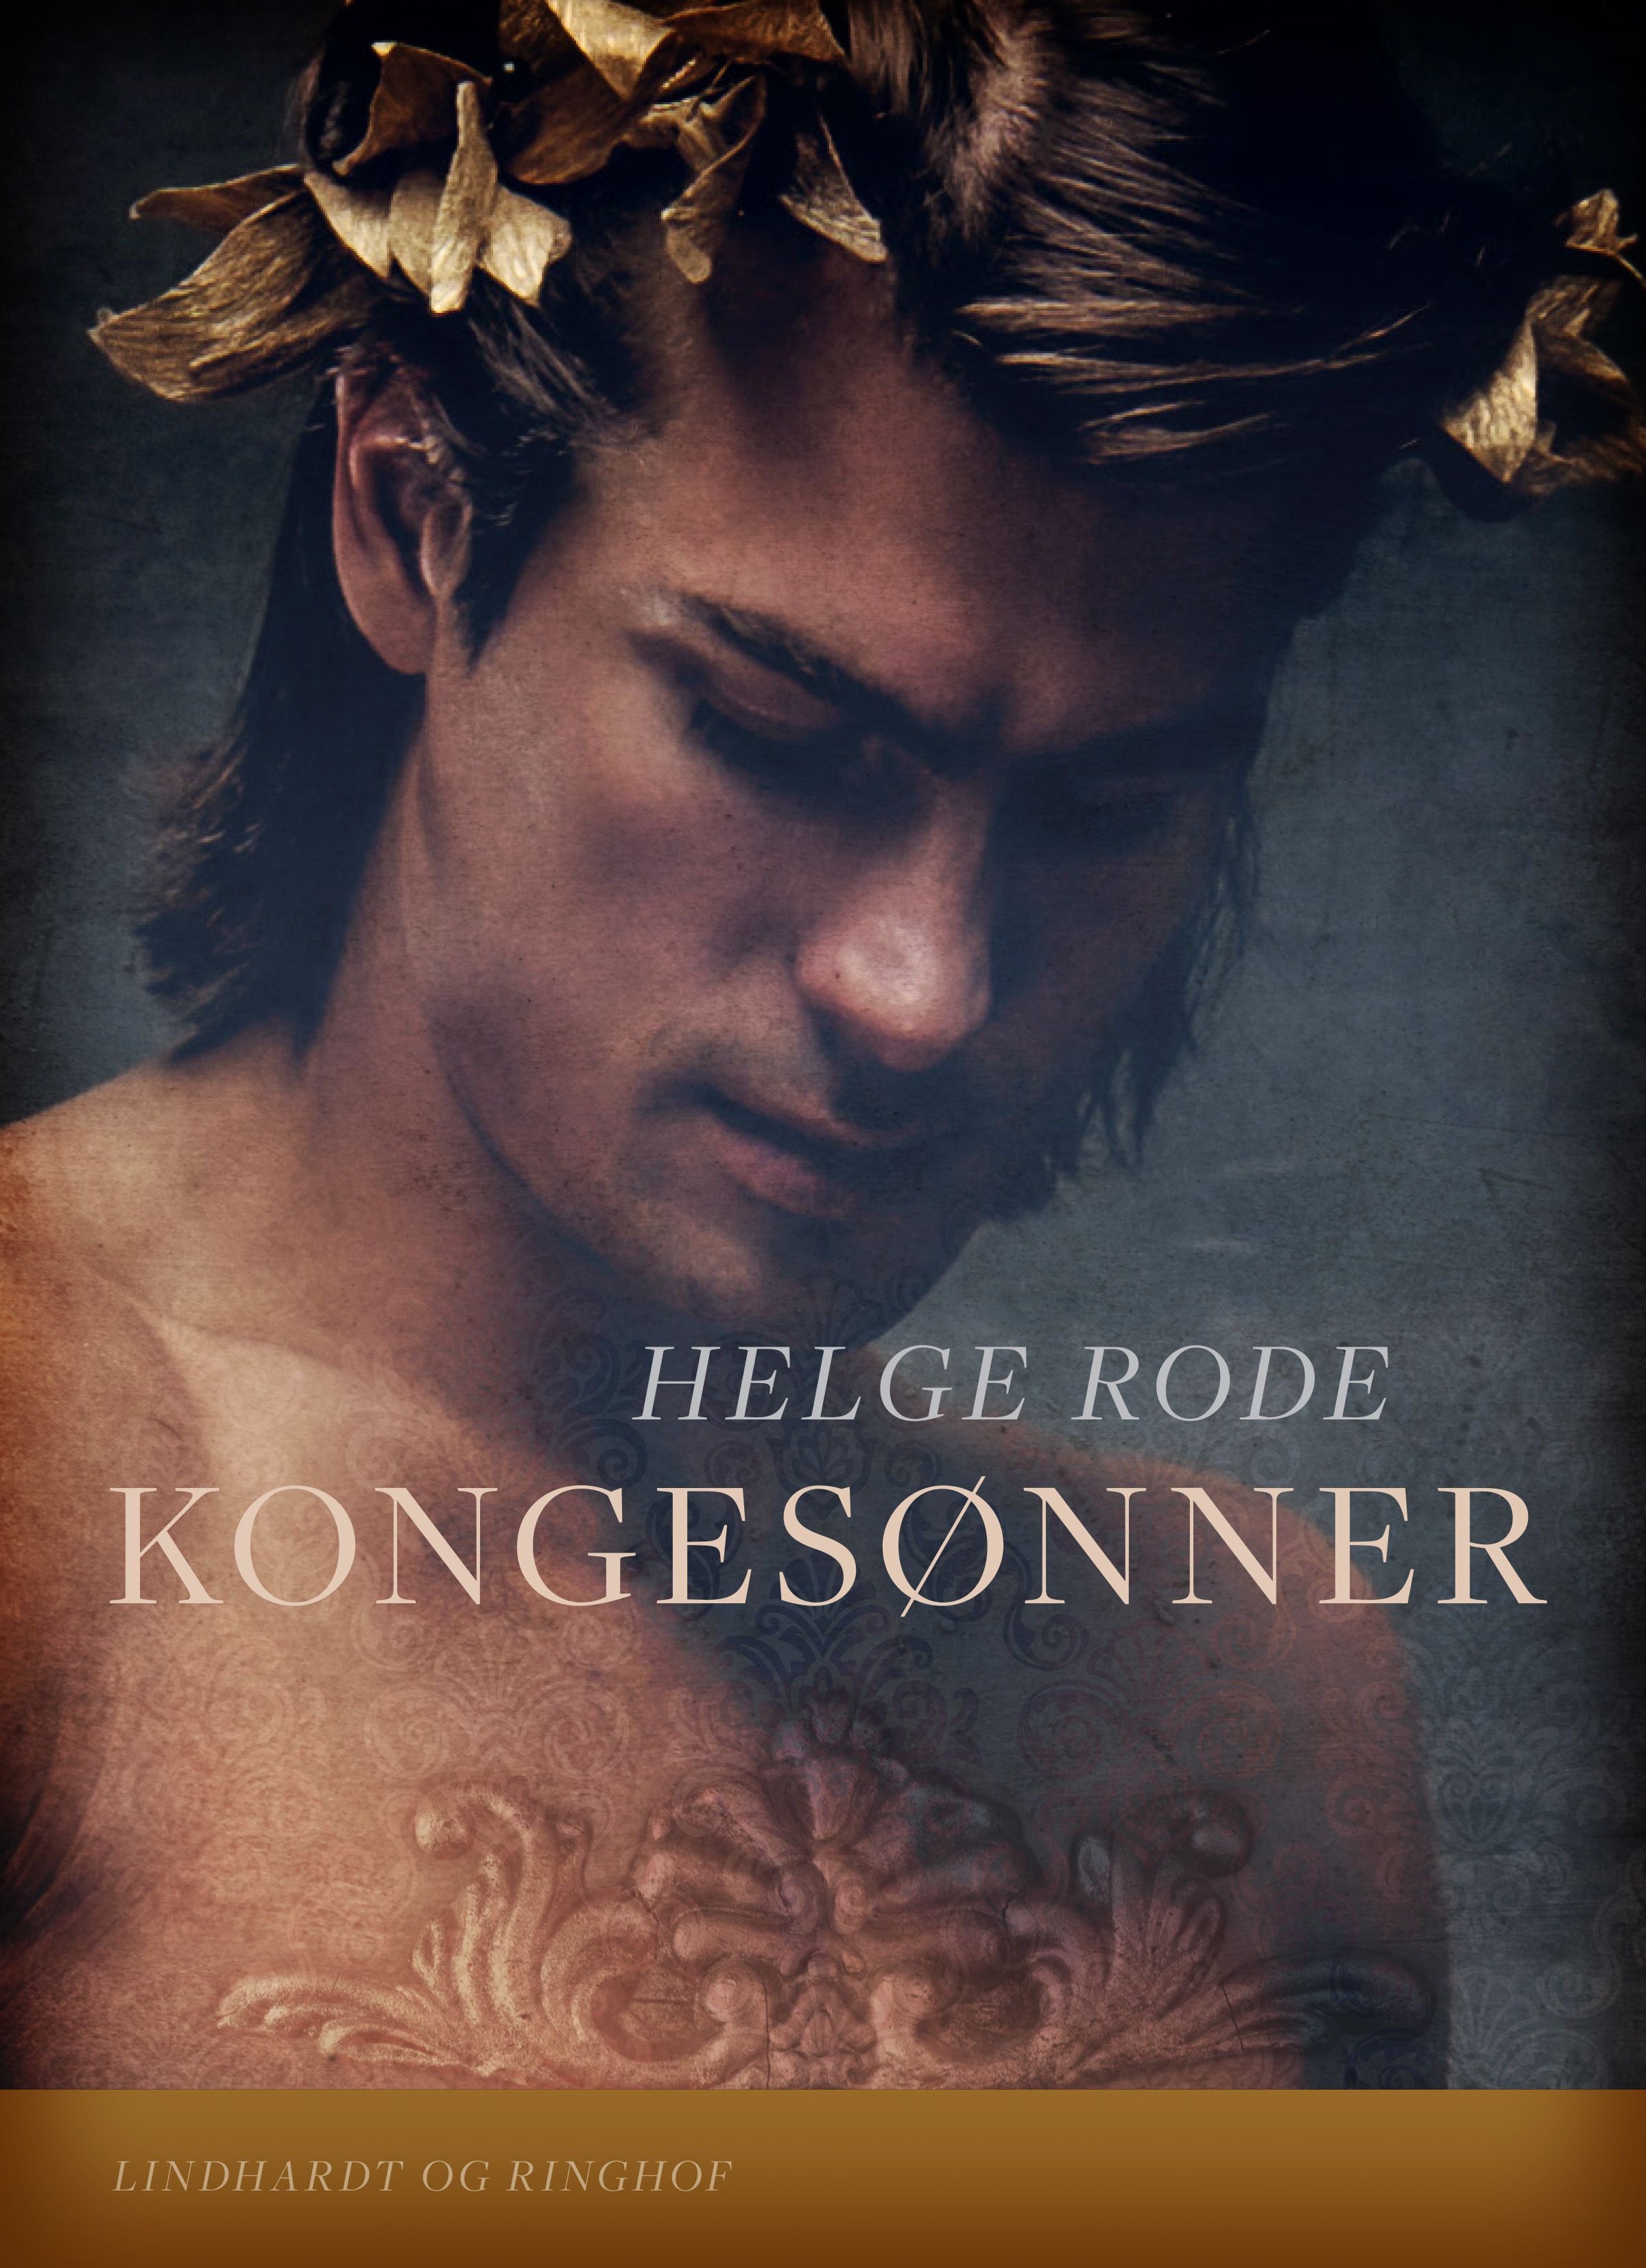 Kongesønner, e-bok av Helge Rode